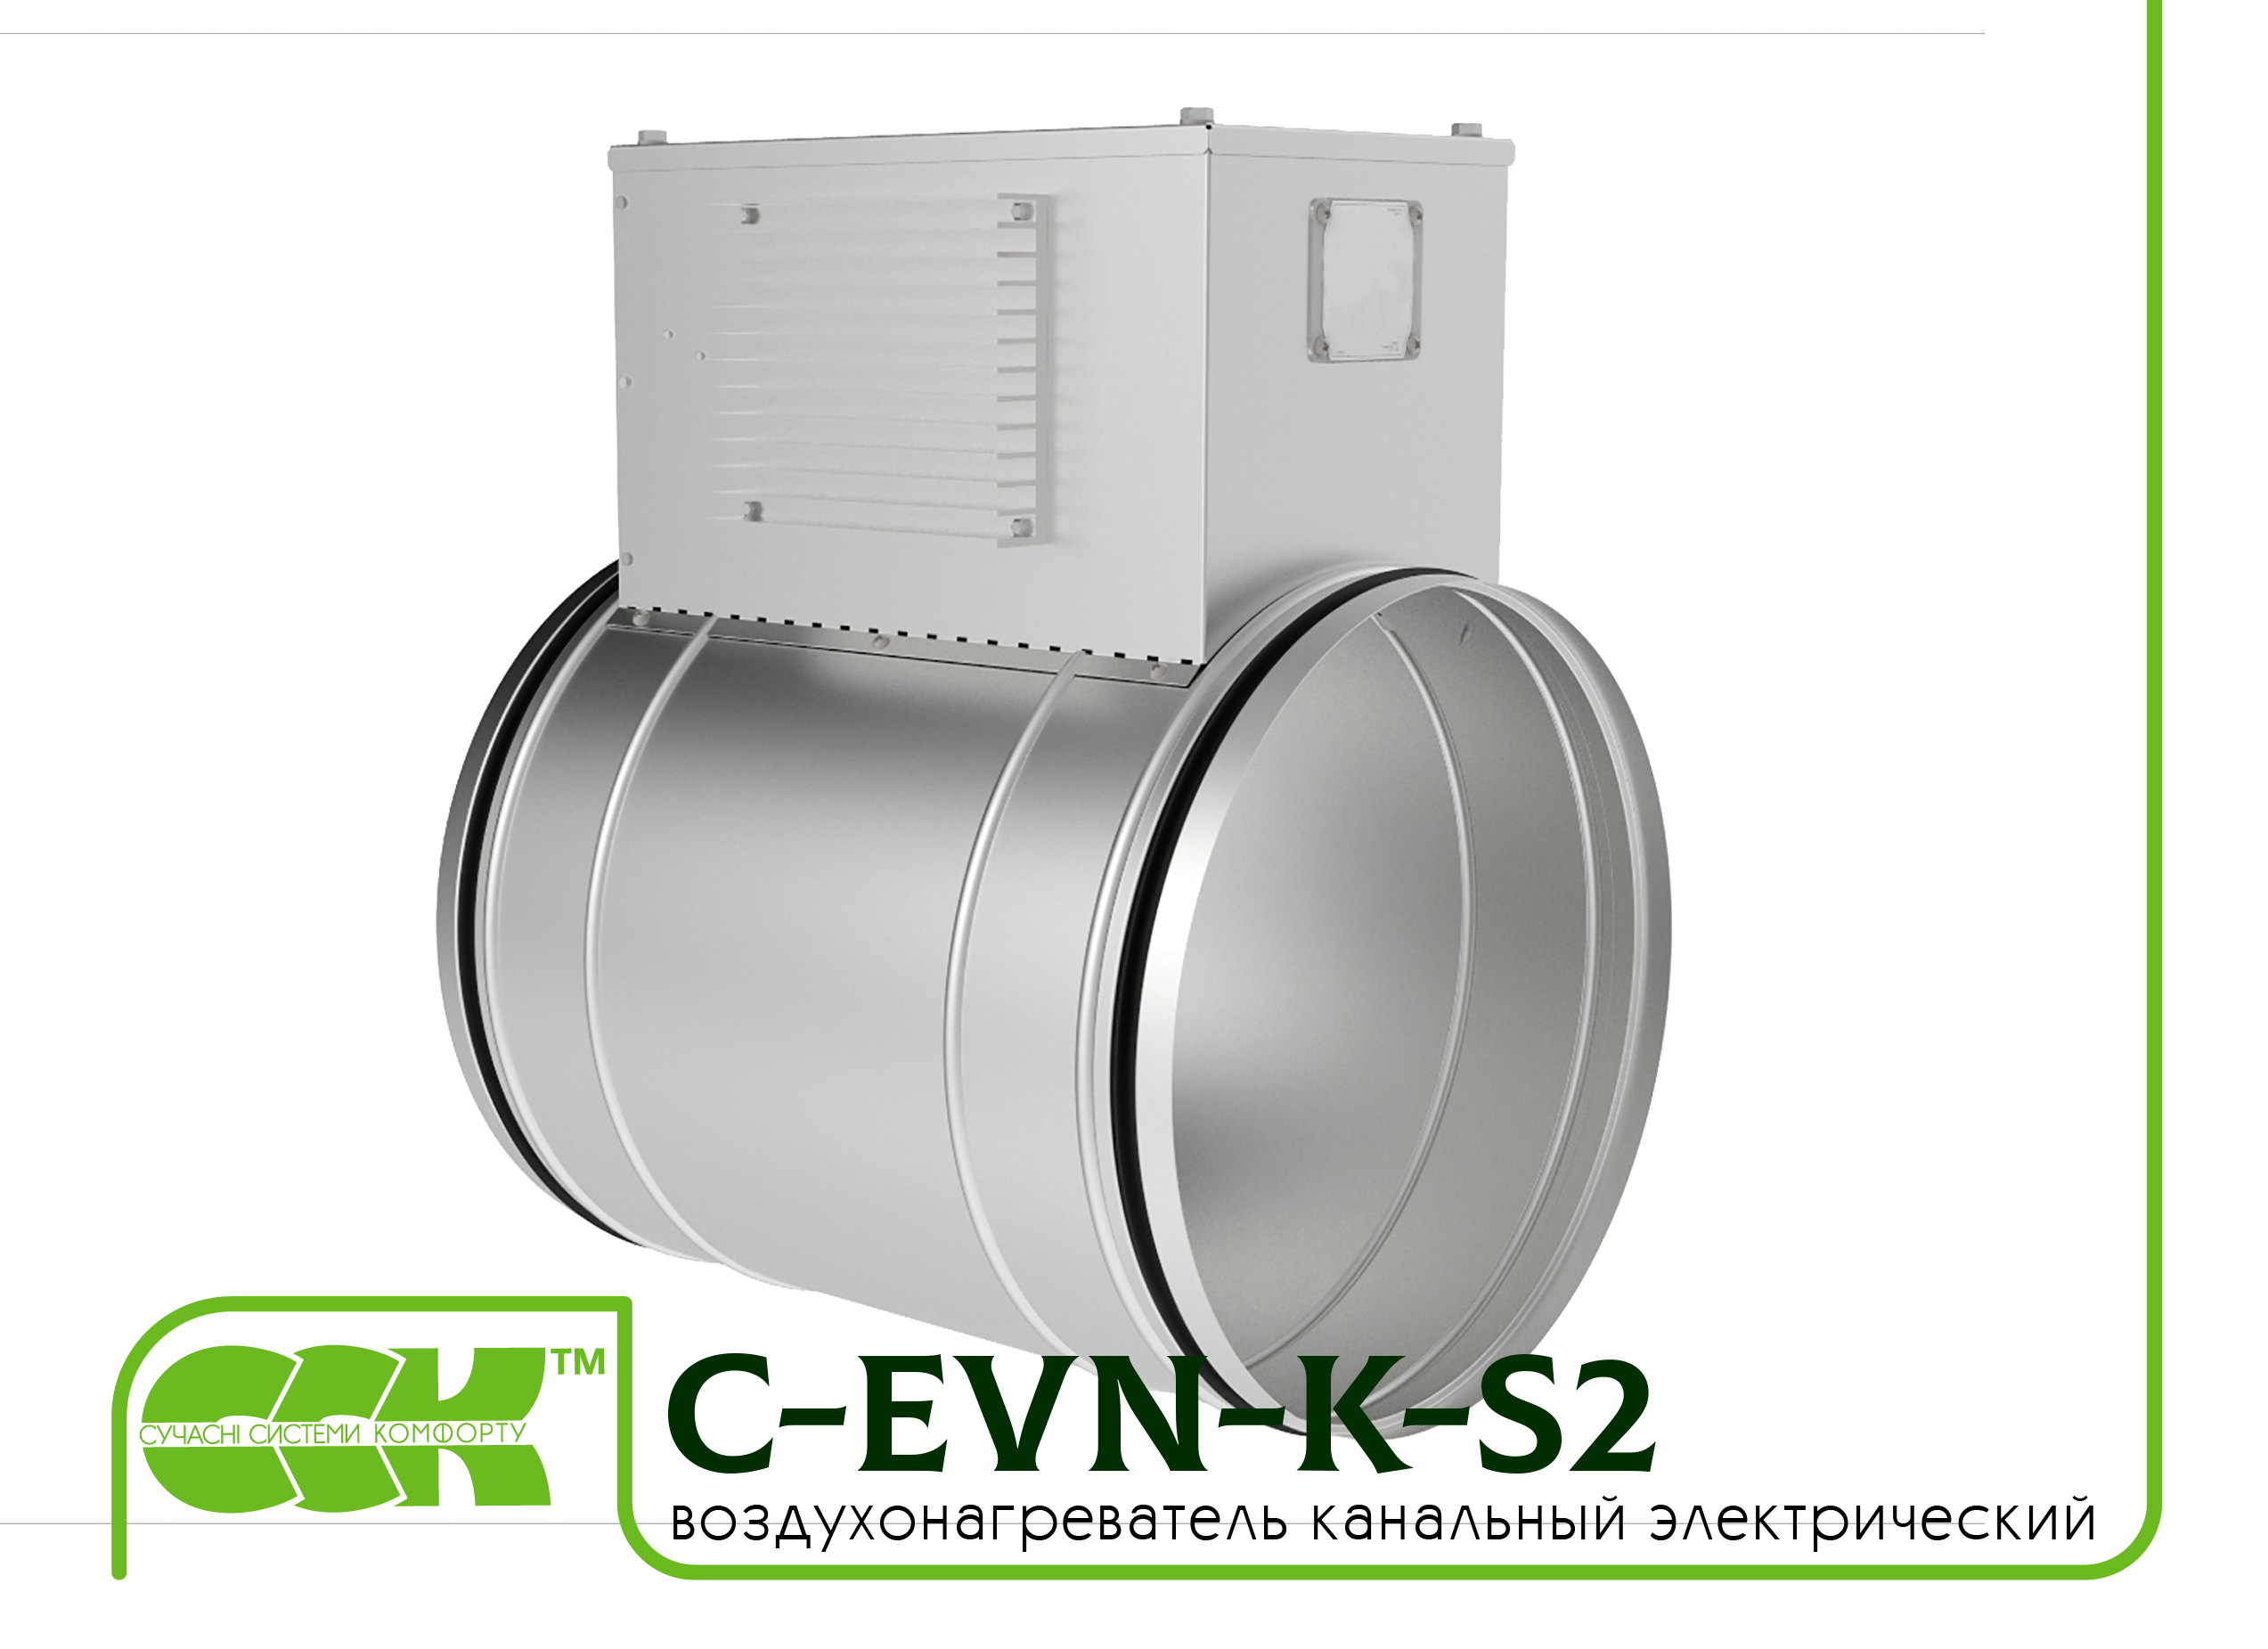 Воздухонагреватель канальный электрический для круглых каналов C-EVN-K-S2-315-15,0